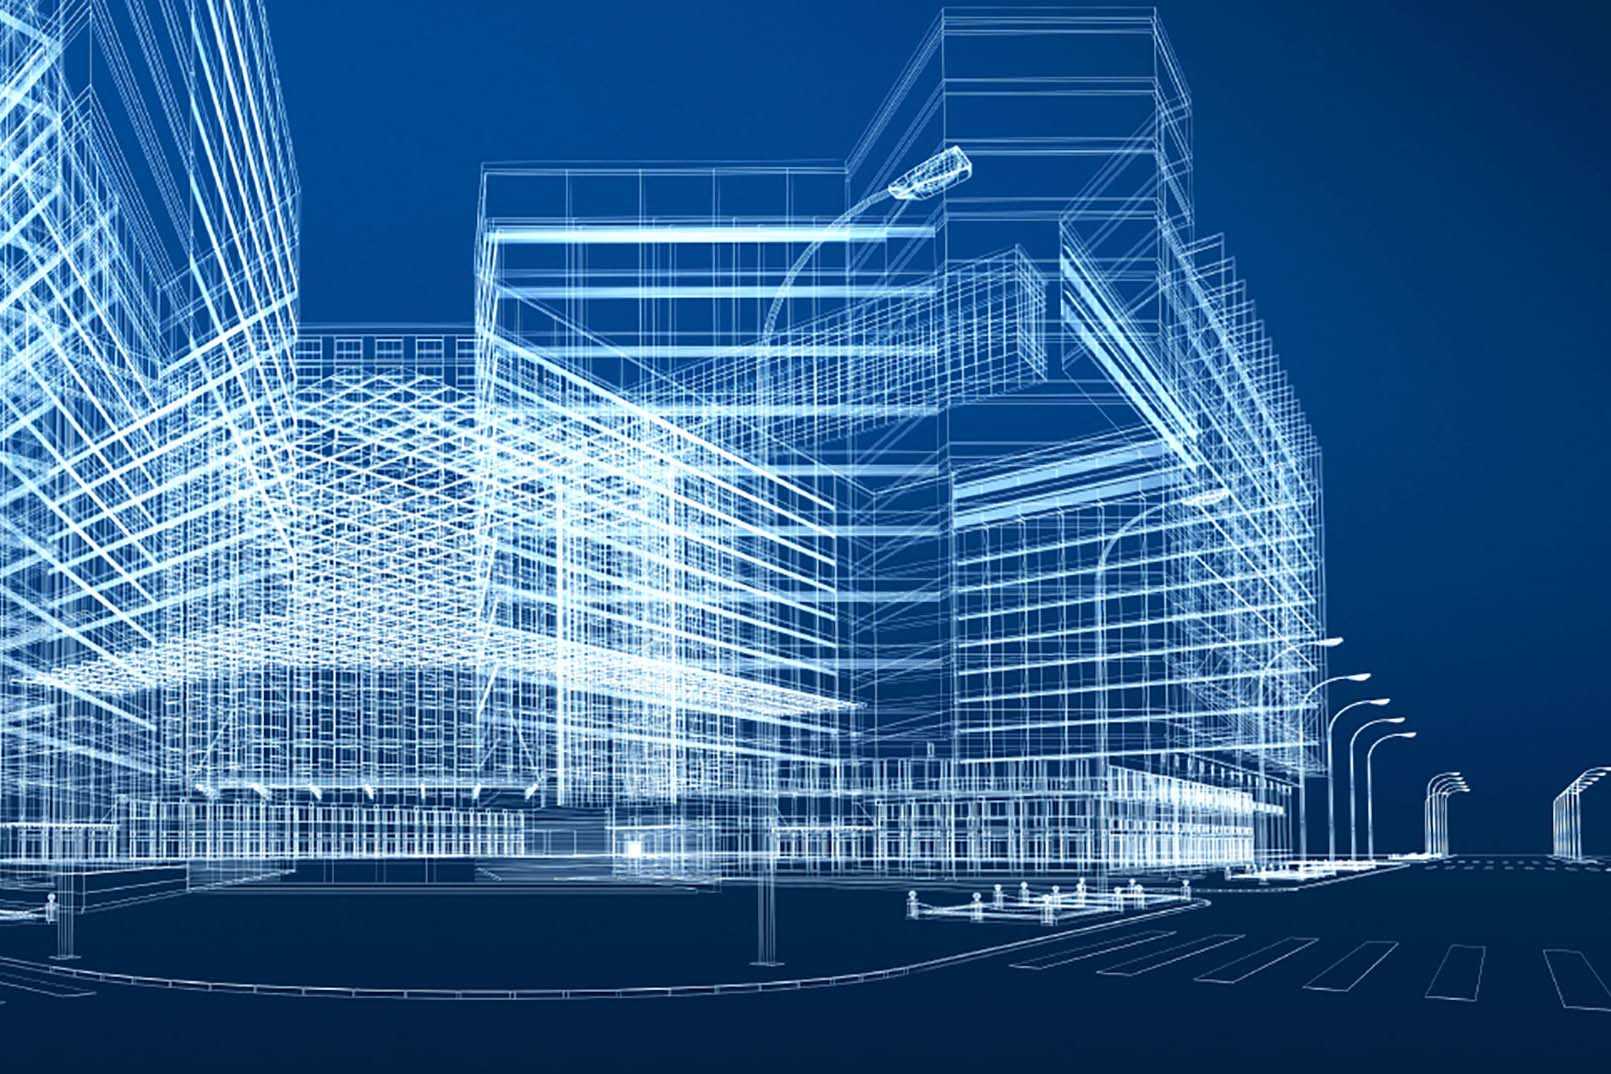 Bim проектирование зданий: технология, особенности, этапы